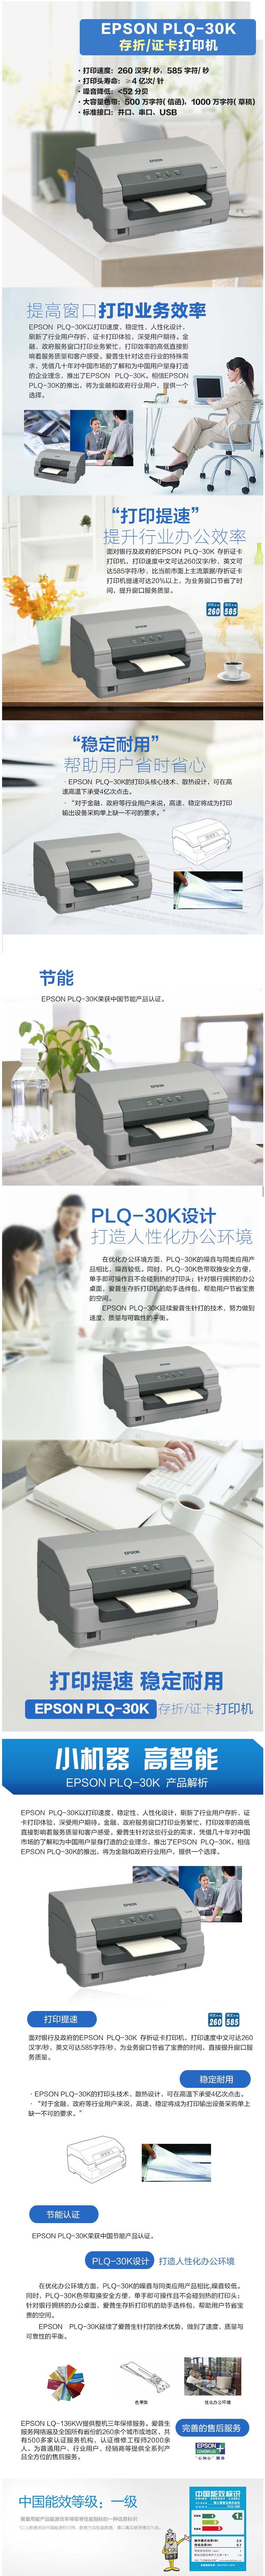 PLQ-30K 1.jpg